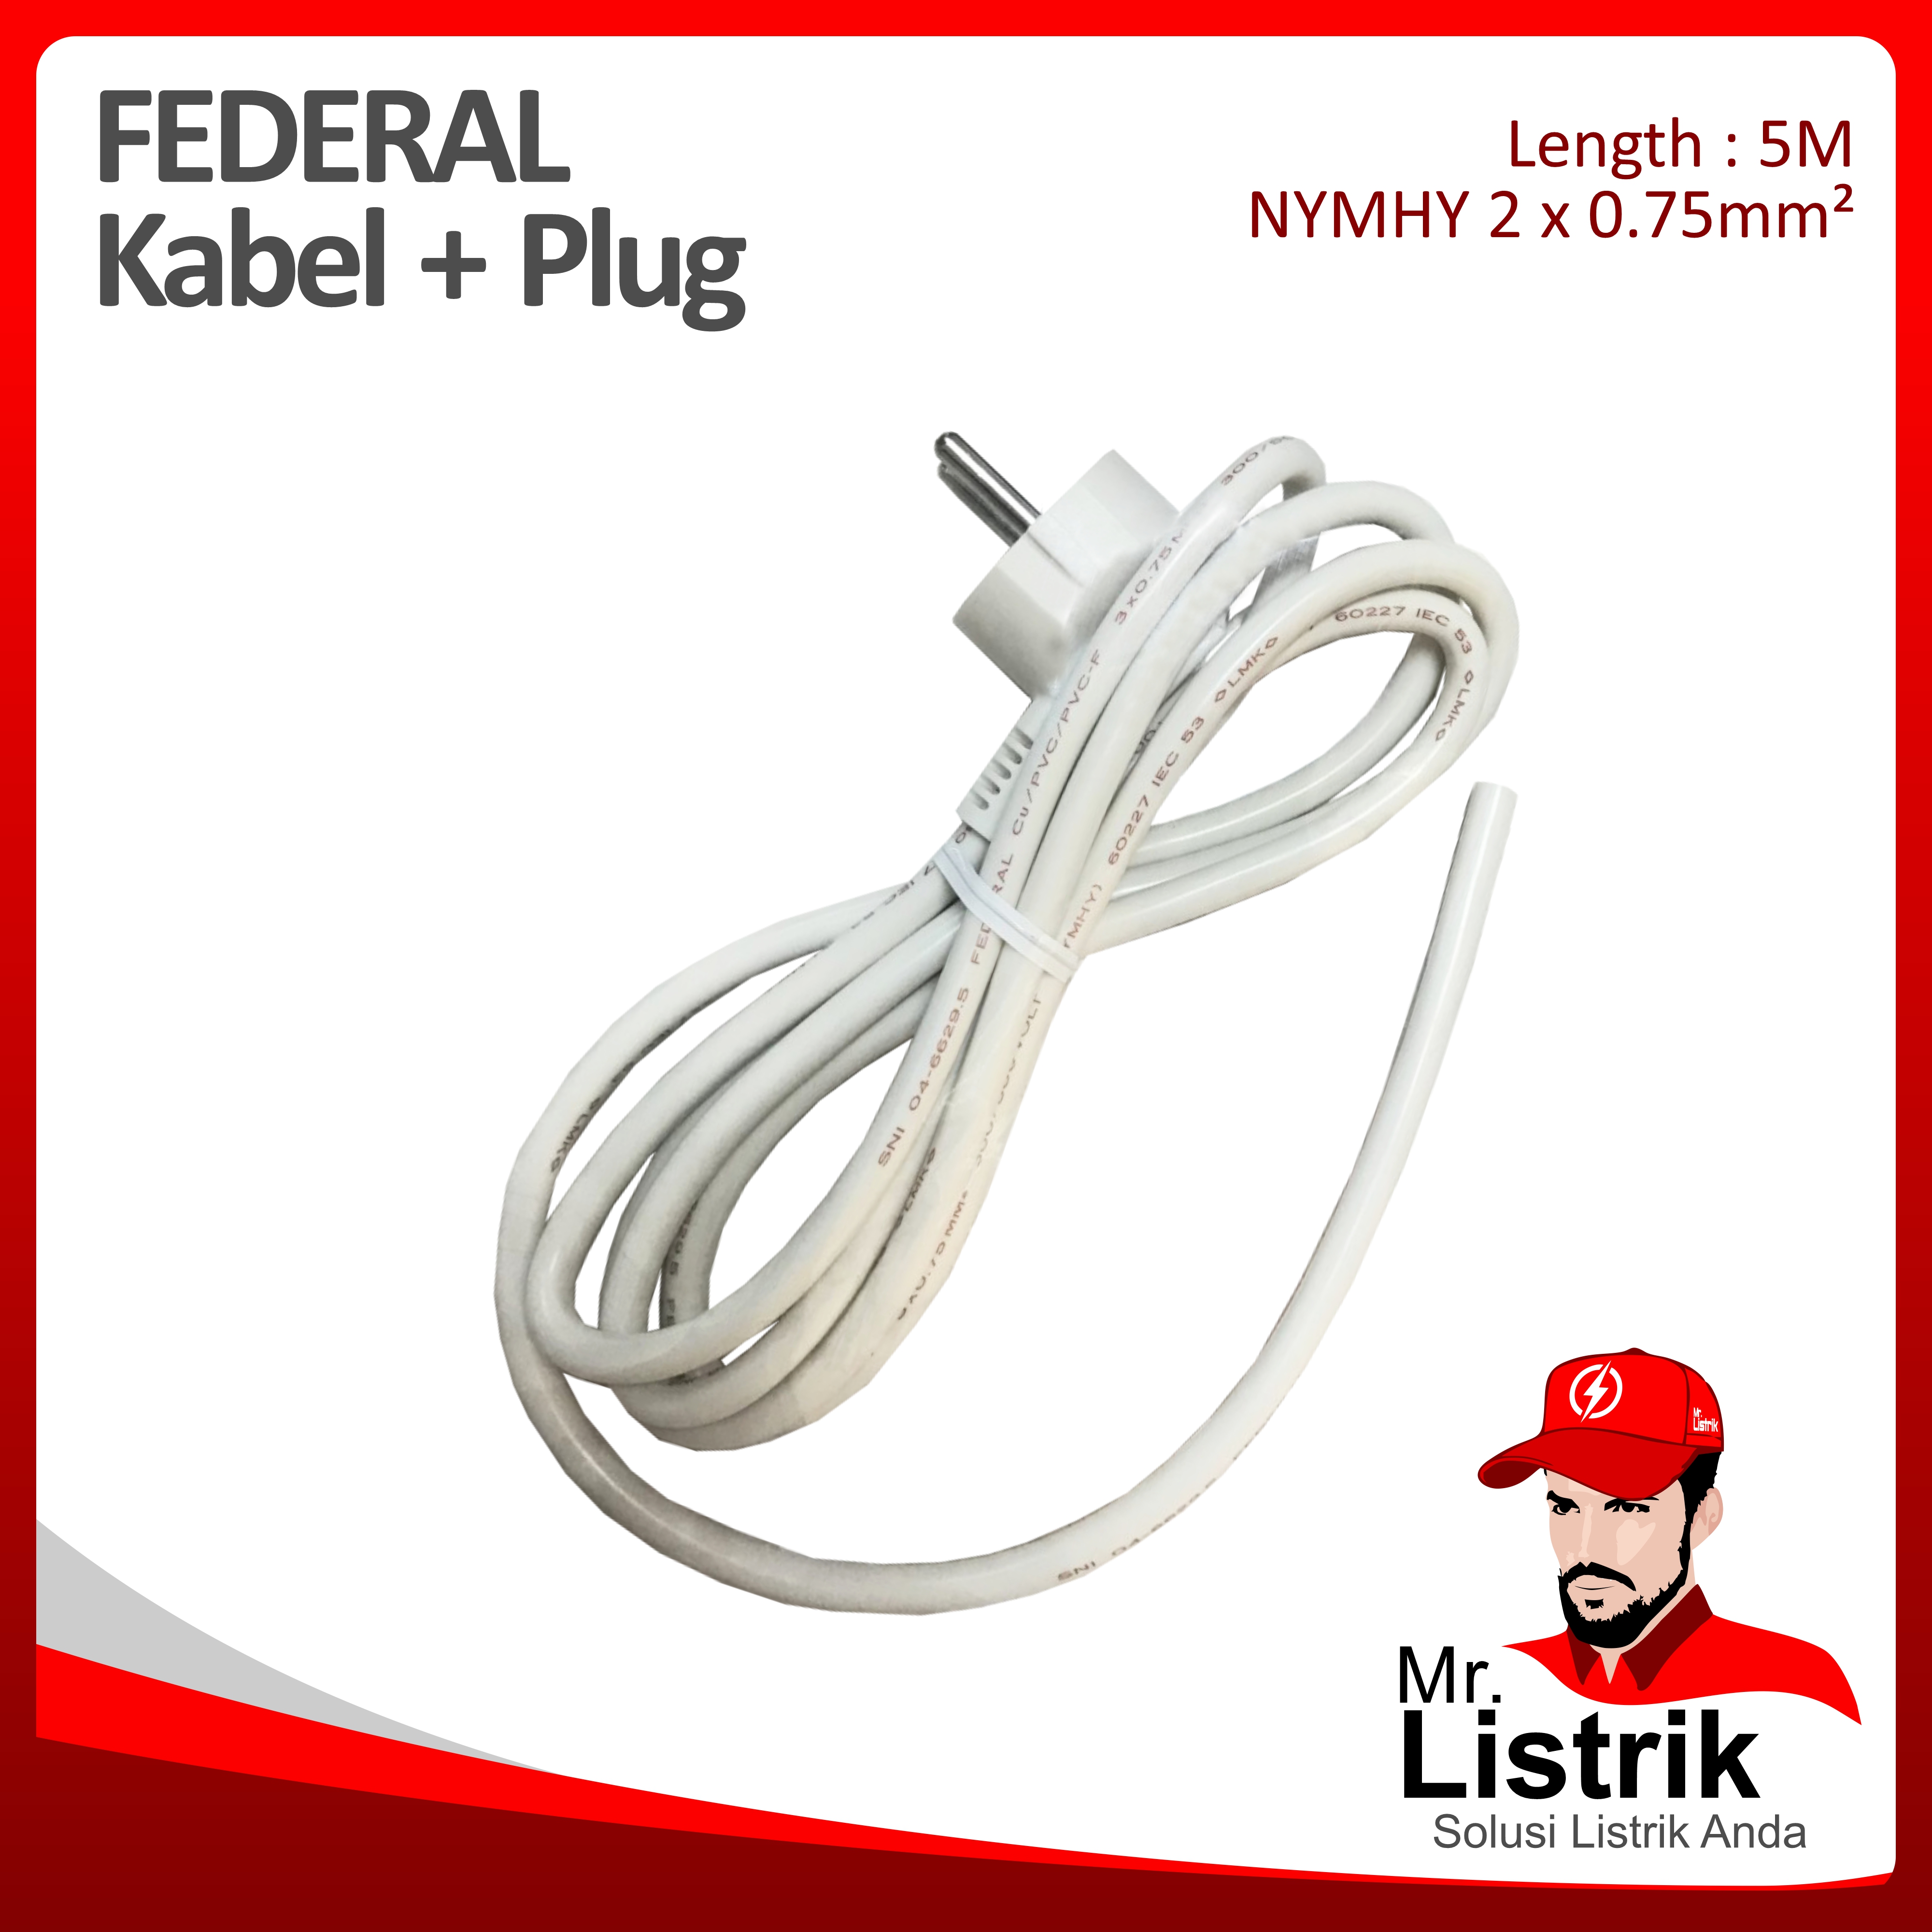 NYMHY 2 x 0.75mm² 5 M + Plug Federal 